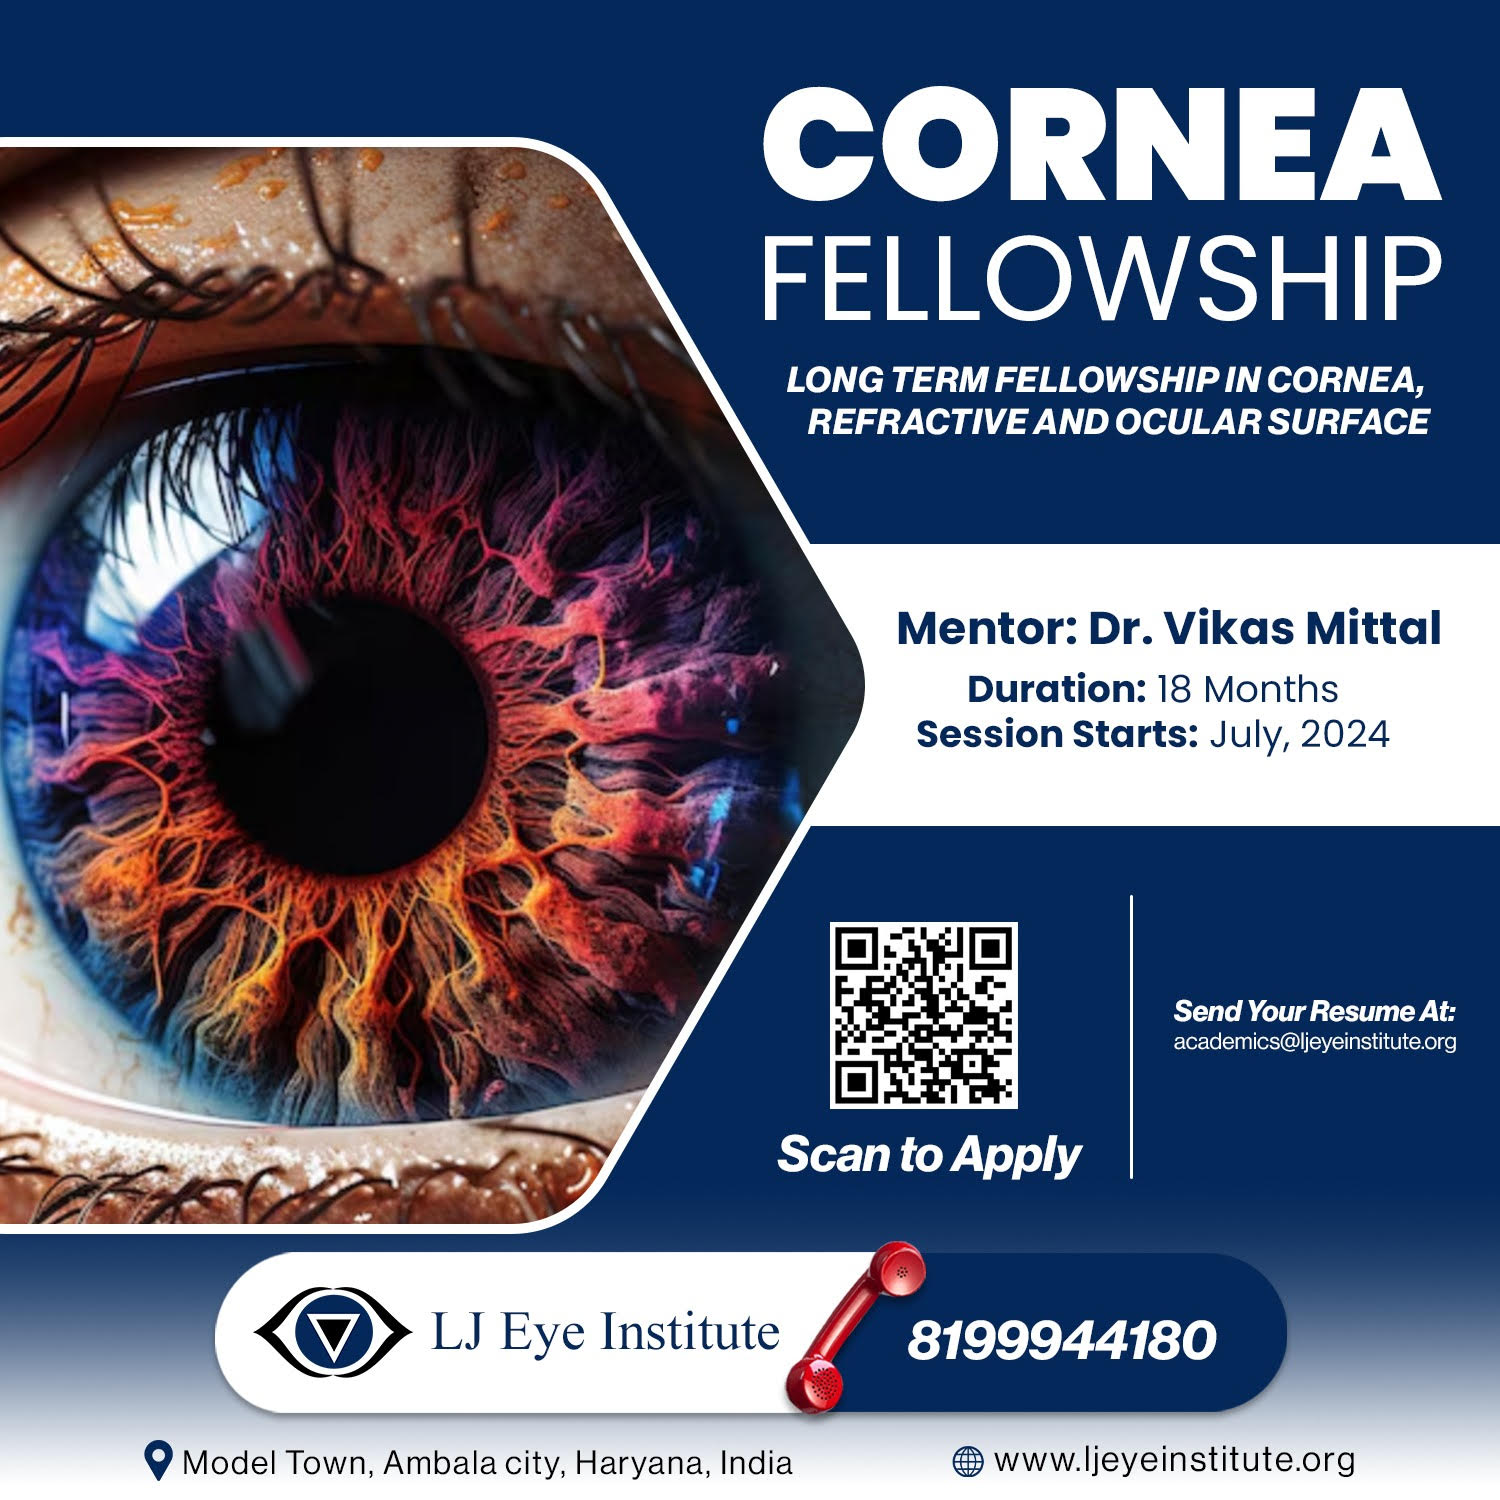 Cornea fellowship in India | LJ Eye Institute | Best Cornea Fellowship